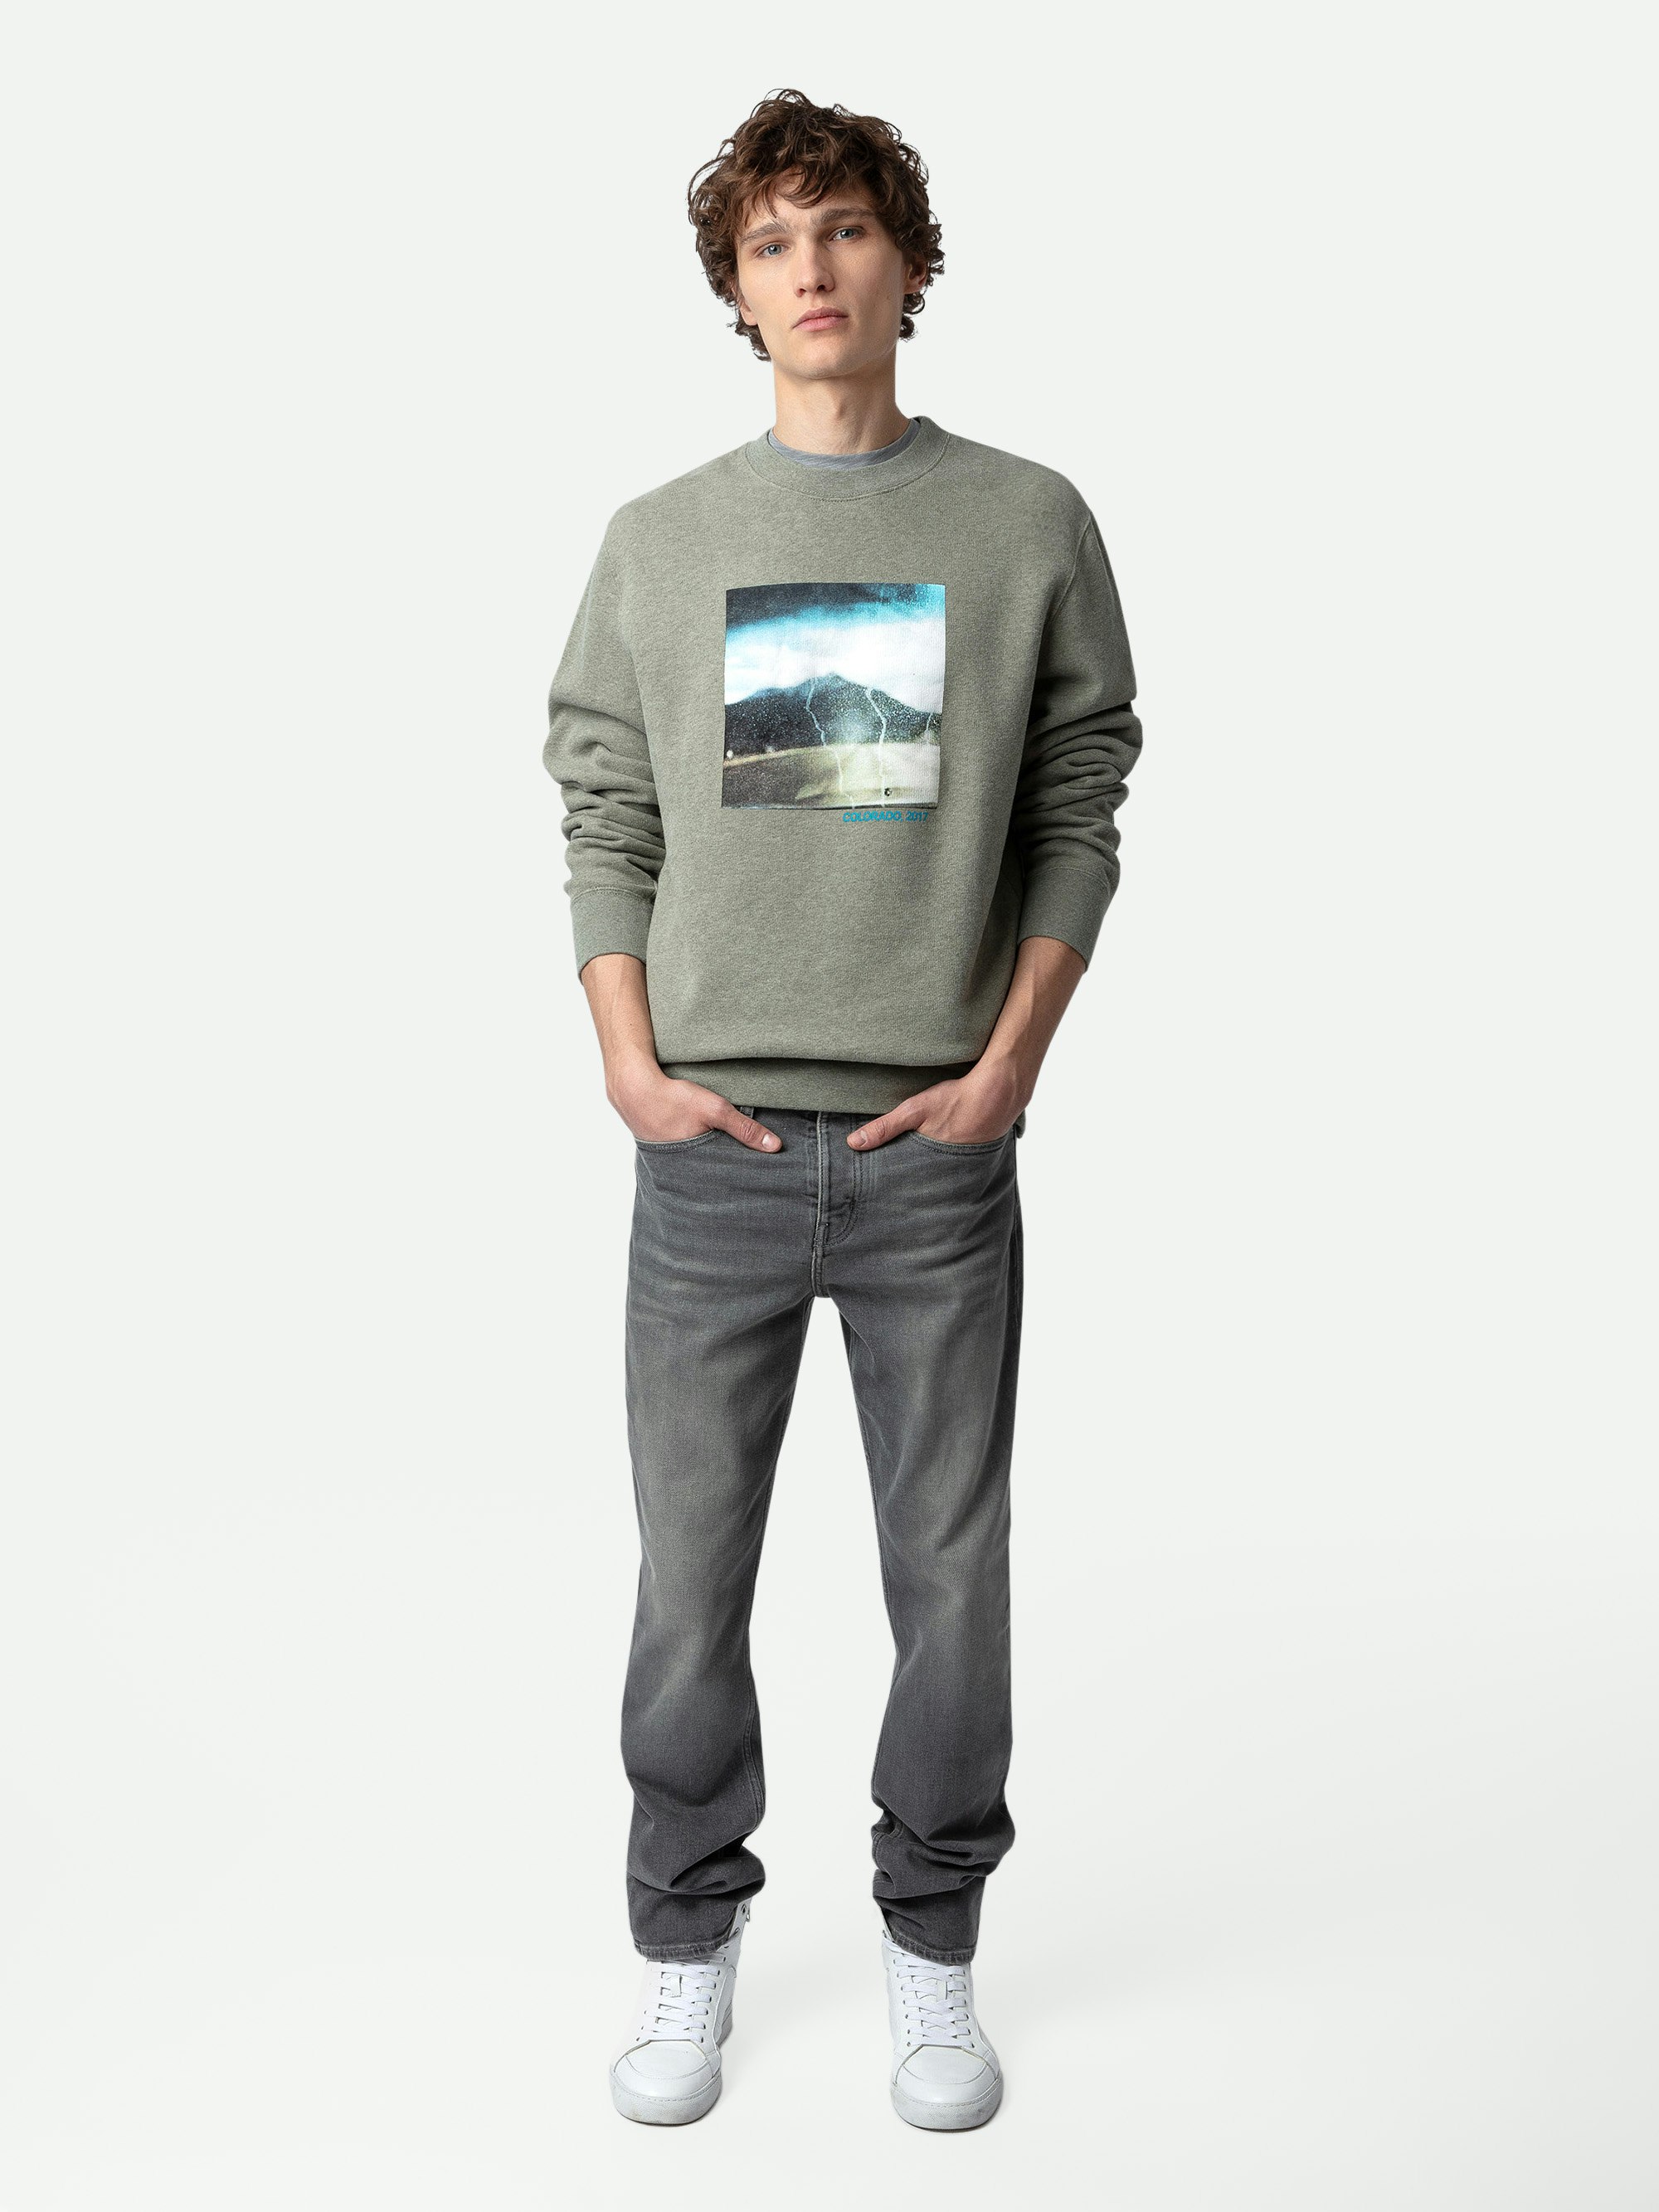 Simba Photoprint Sweatshirt - Grey long-sleeved sweatshirt with photoprint and printed slogan.